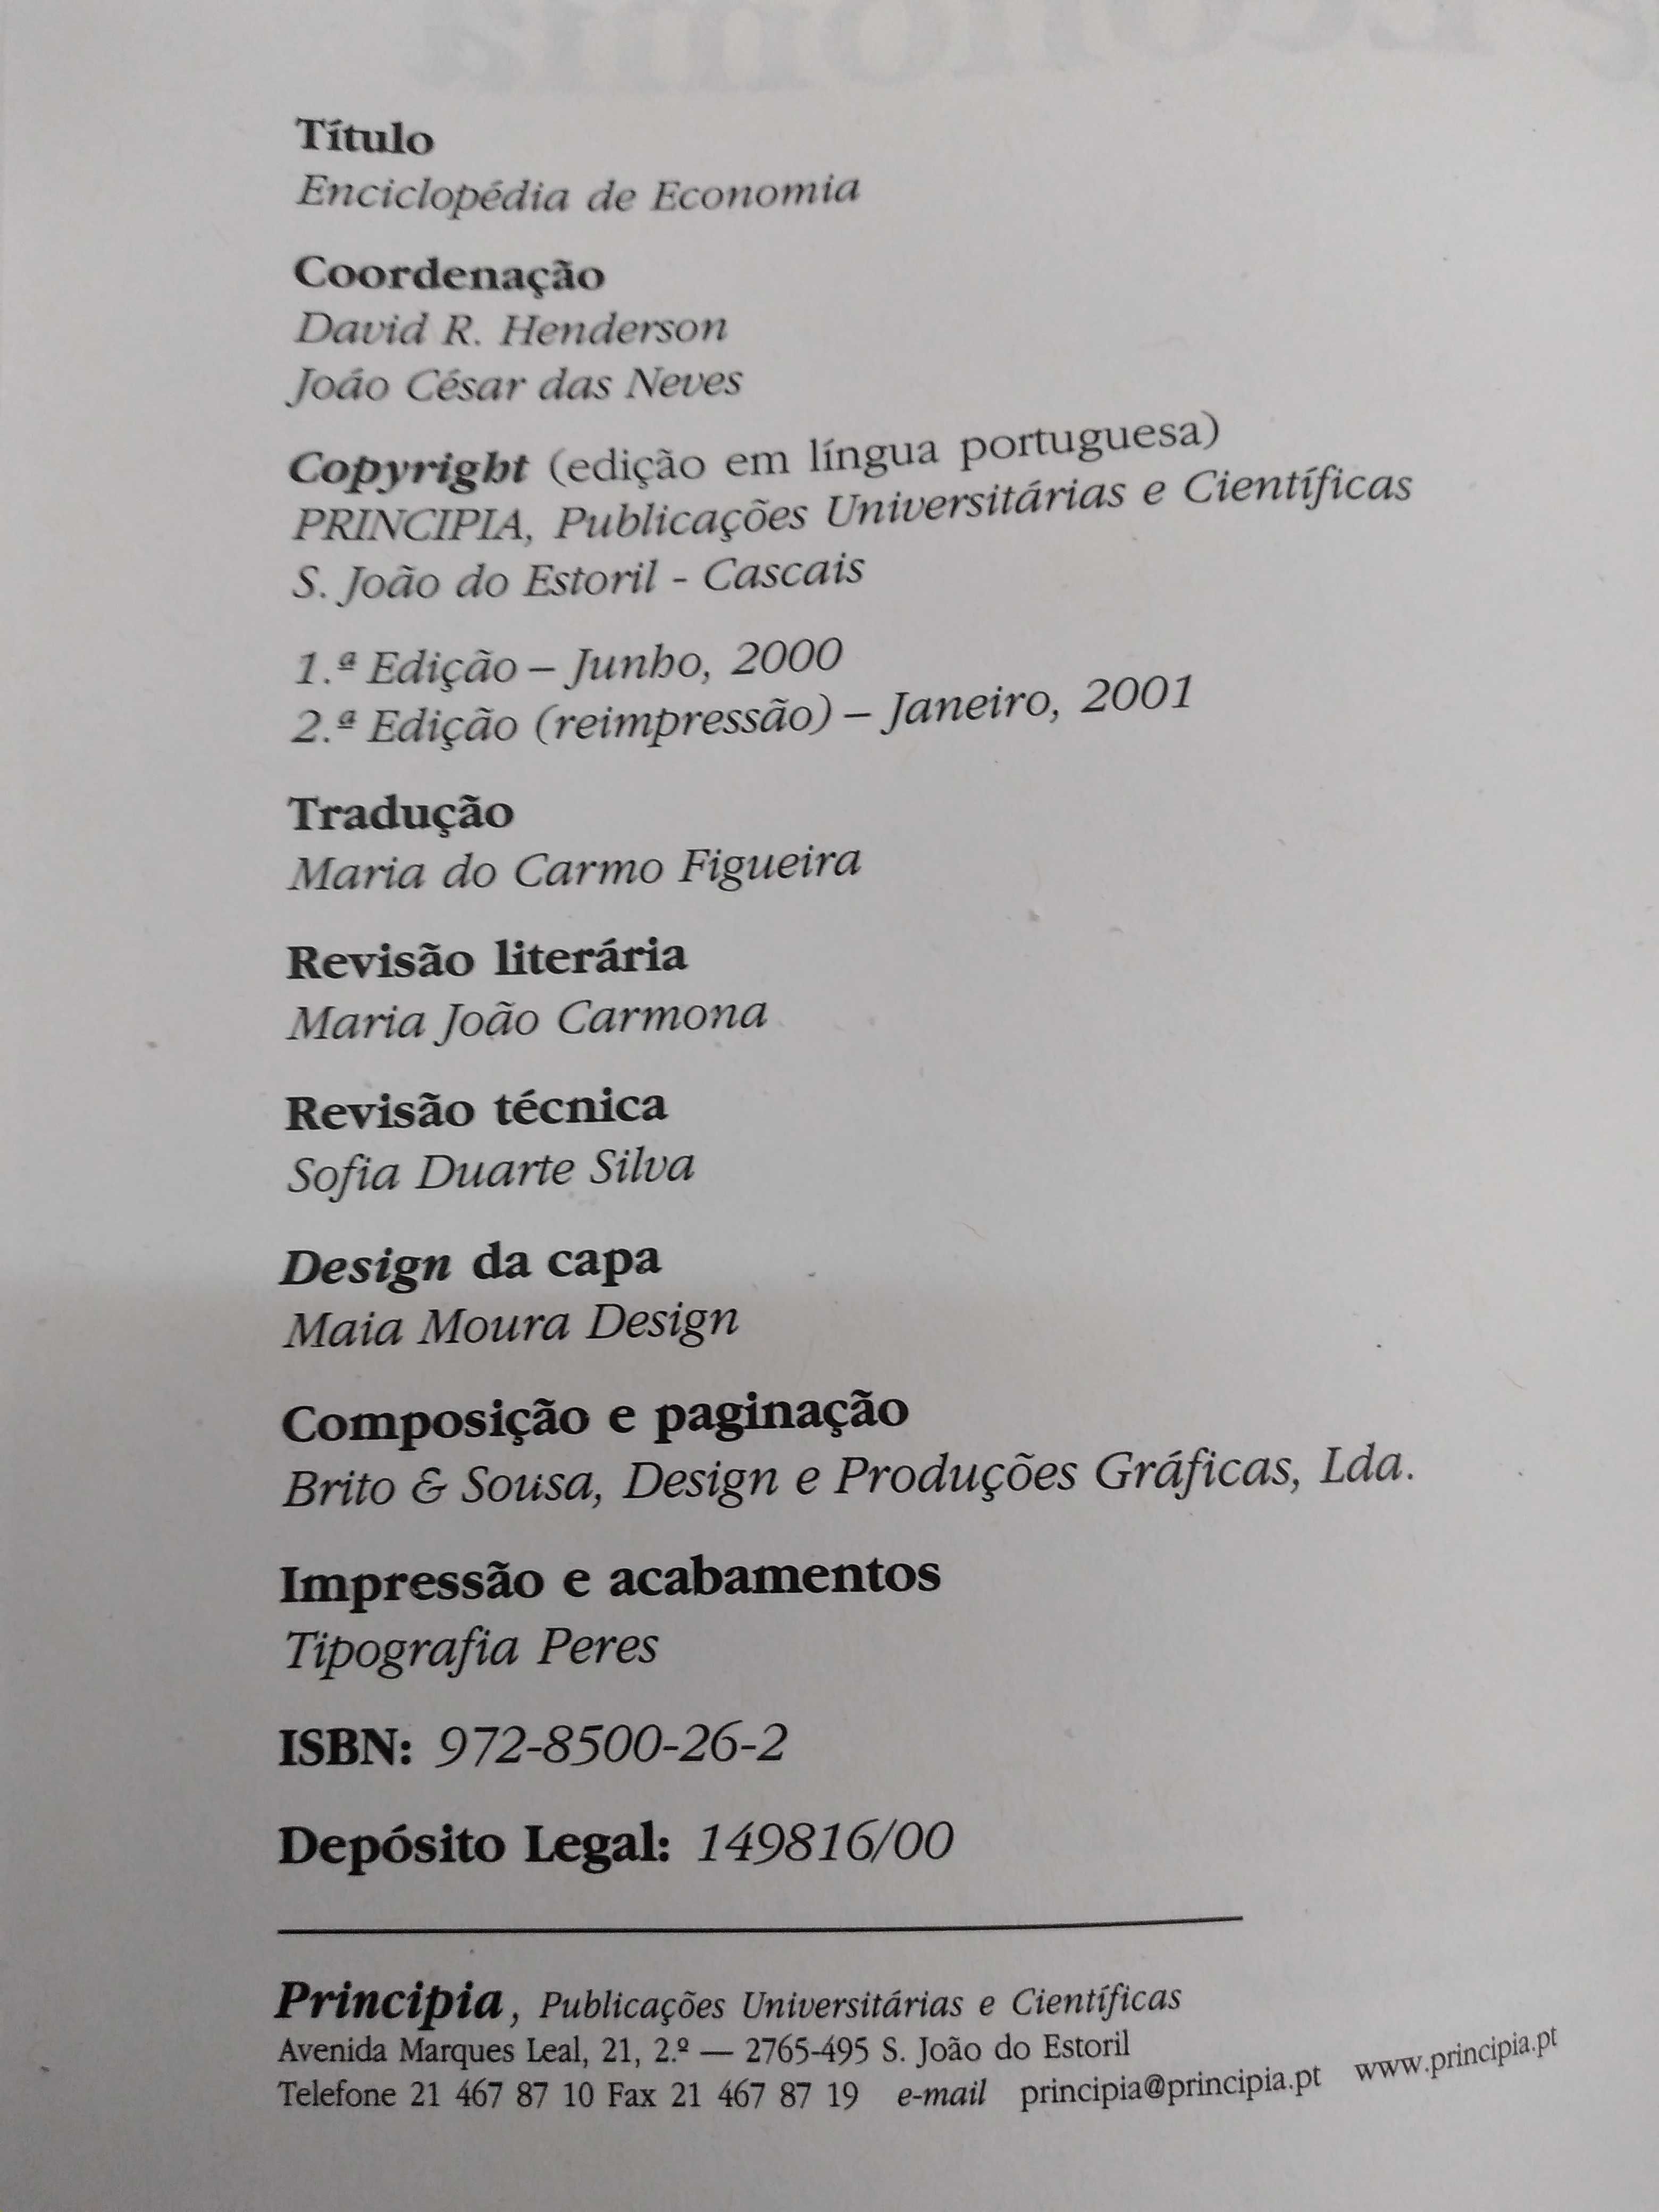 Enciclopédia de Economia - David R. Henderson e João César das Neves